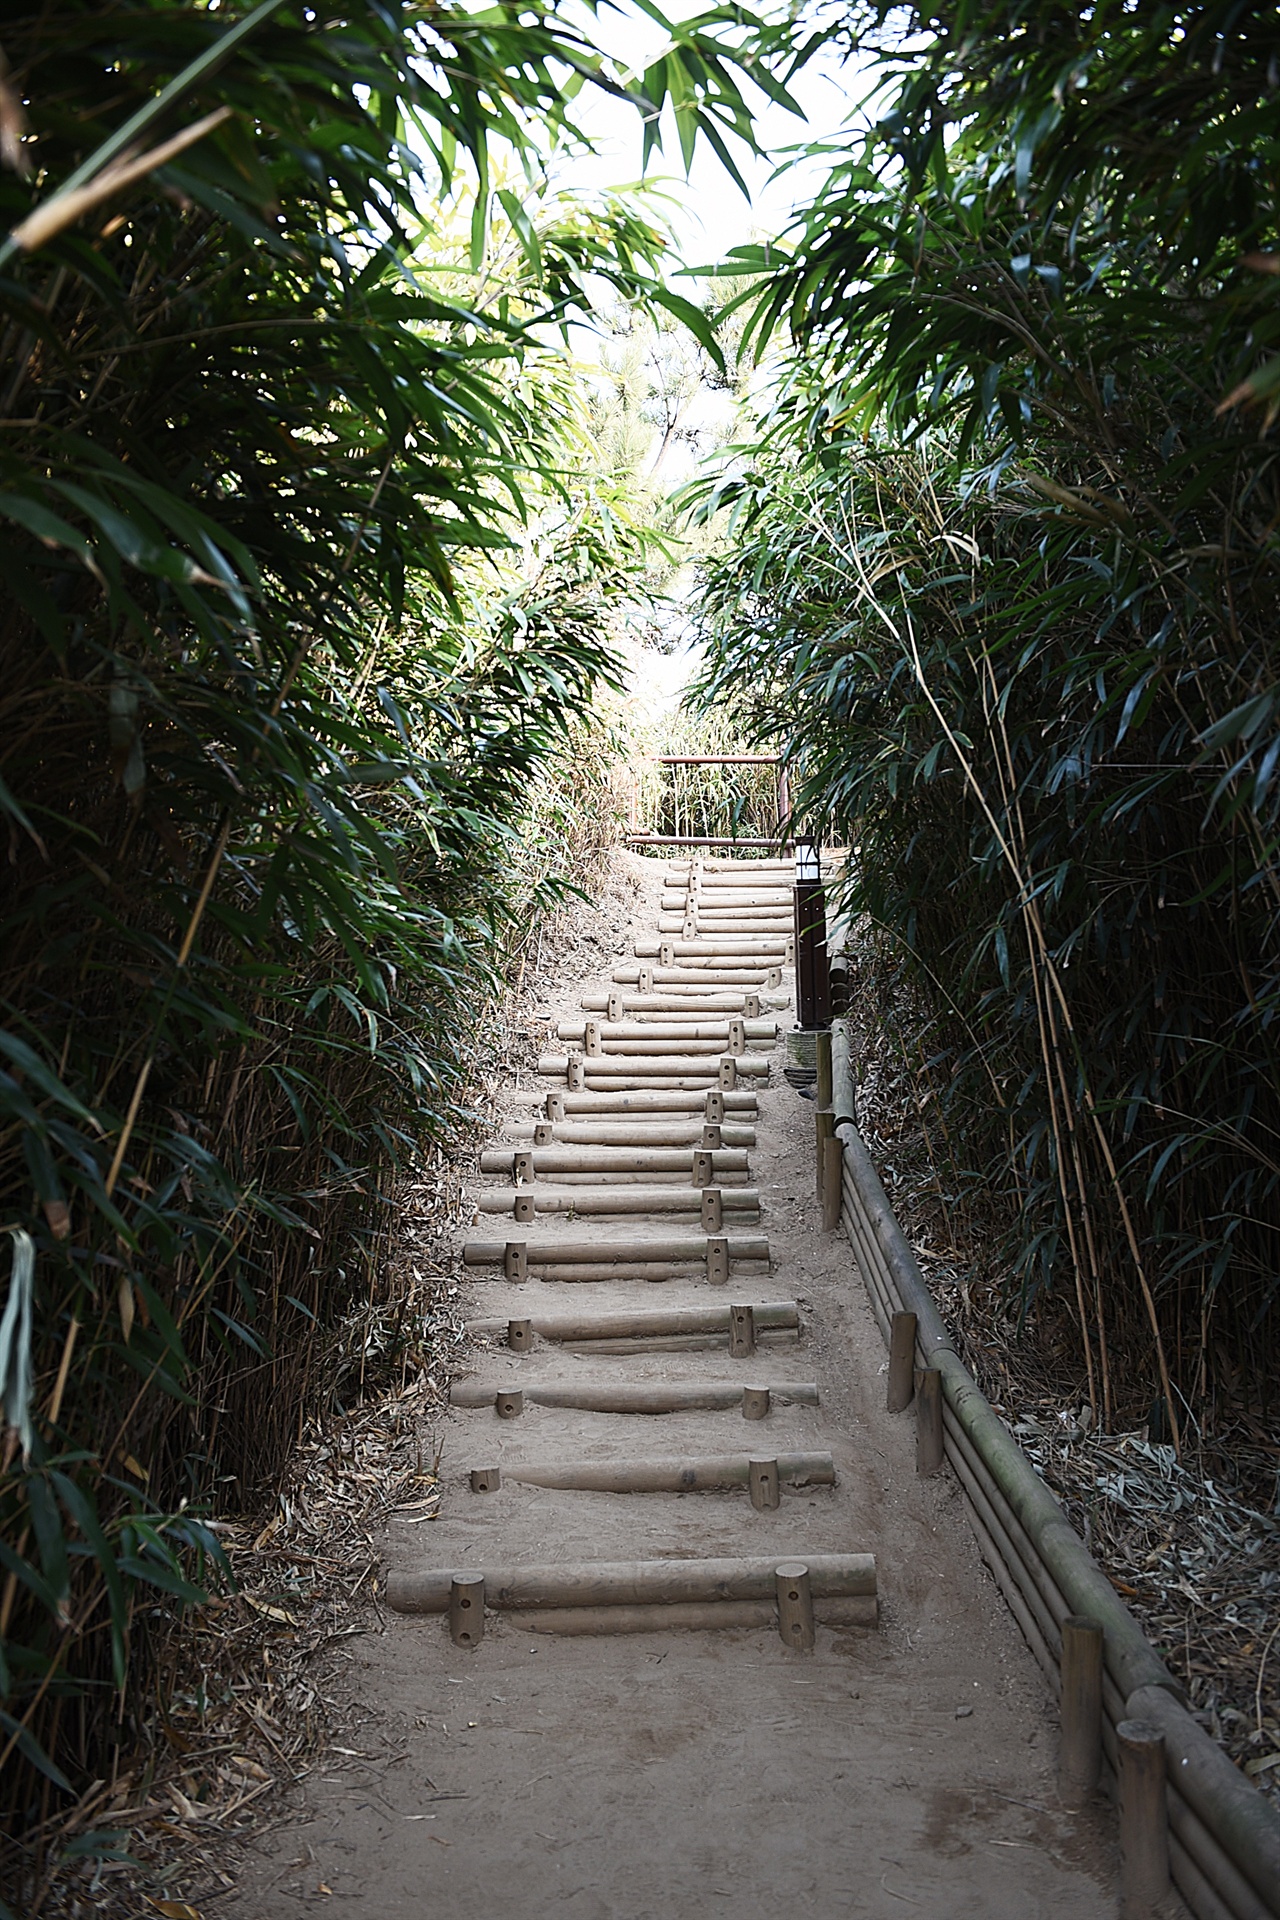 죽변등대 대나무숲길 등대 아래 '용의 꿈길'로 이름붙인 대나무숲길이 있다. 